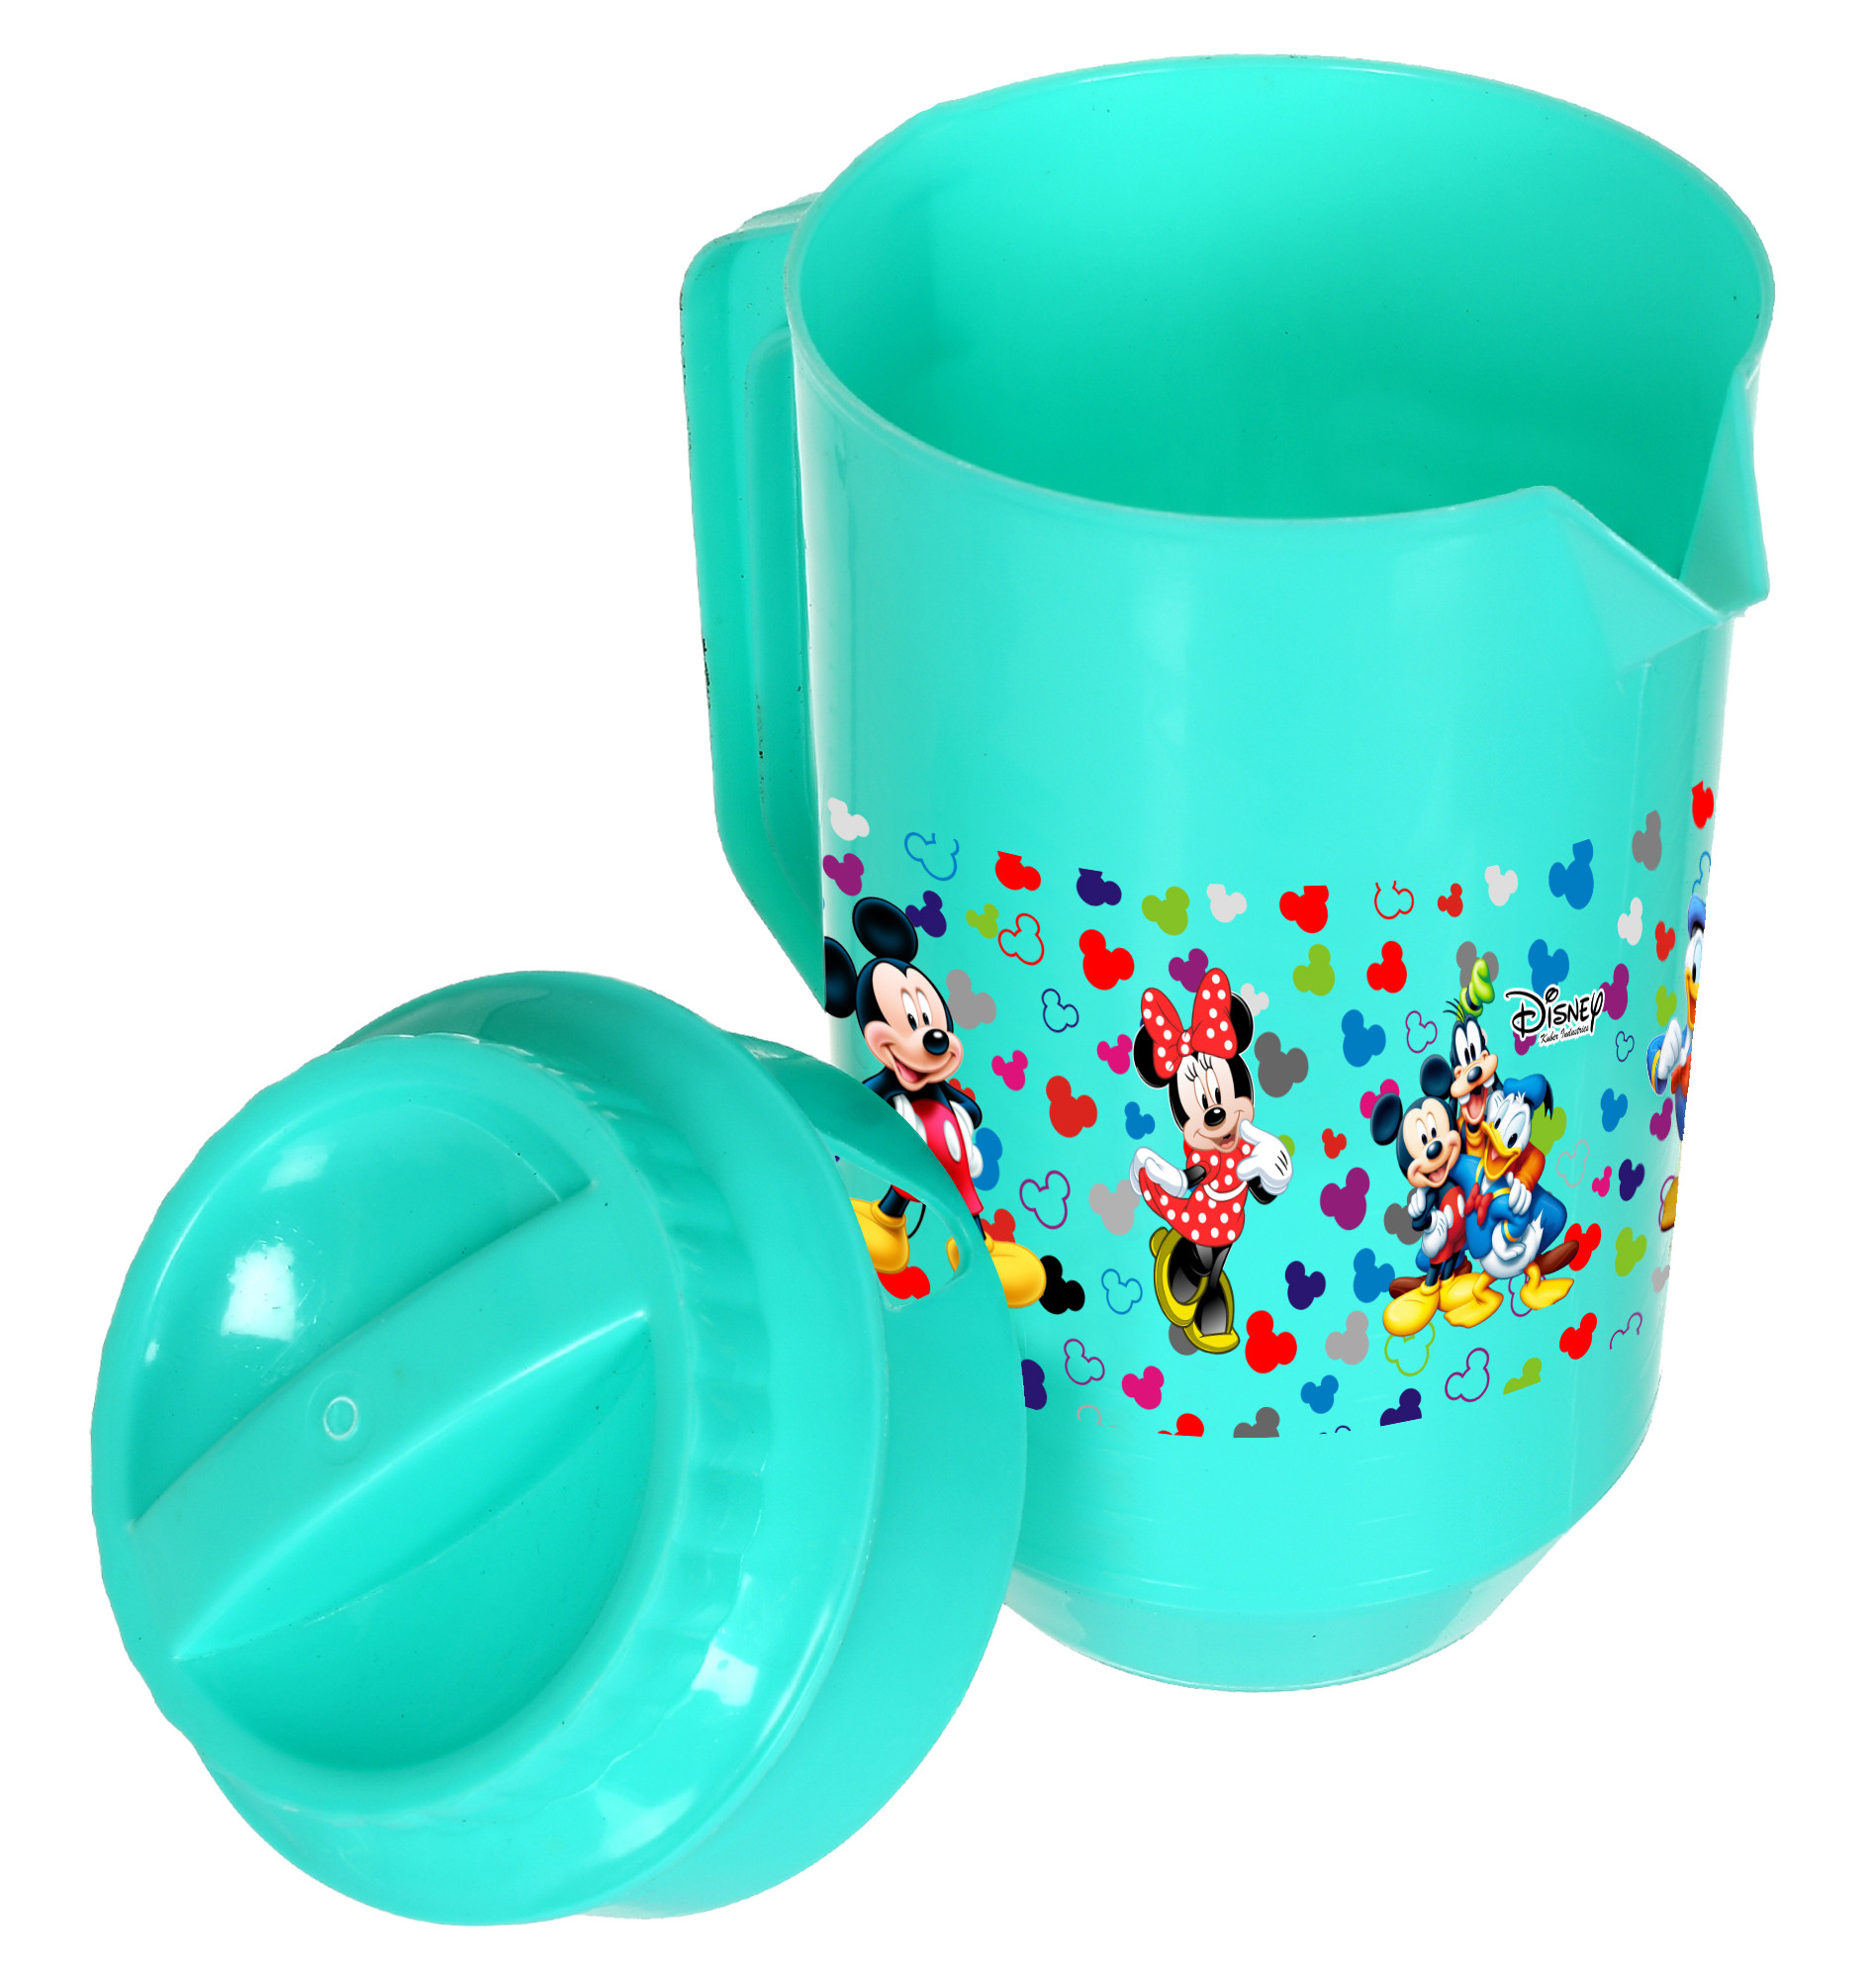 Kuber Industries Disney Team Mickey Print Unbreakable Multipurpose Plastic Water & Juice Jug With Lid,2 Ltr (Green)